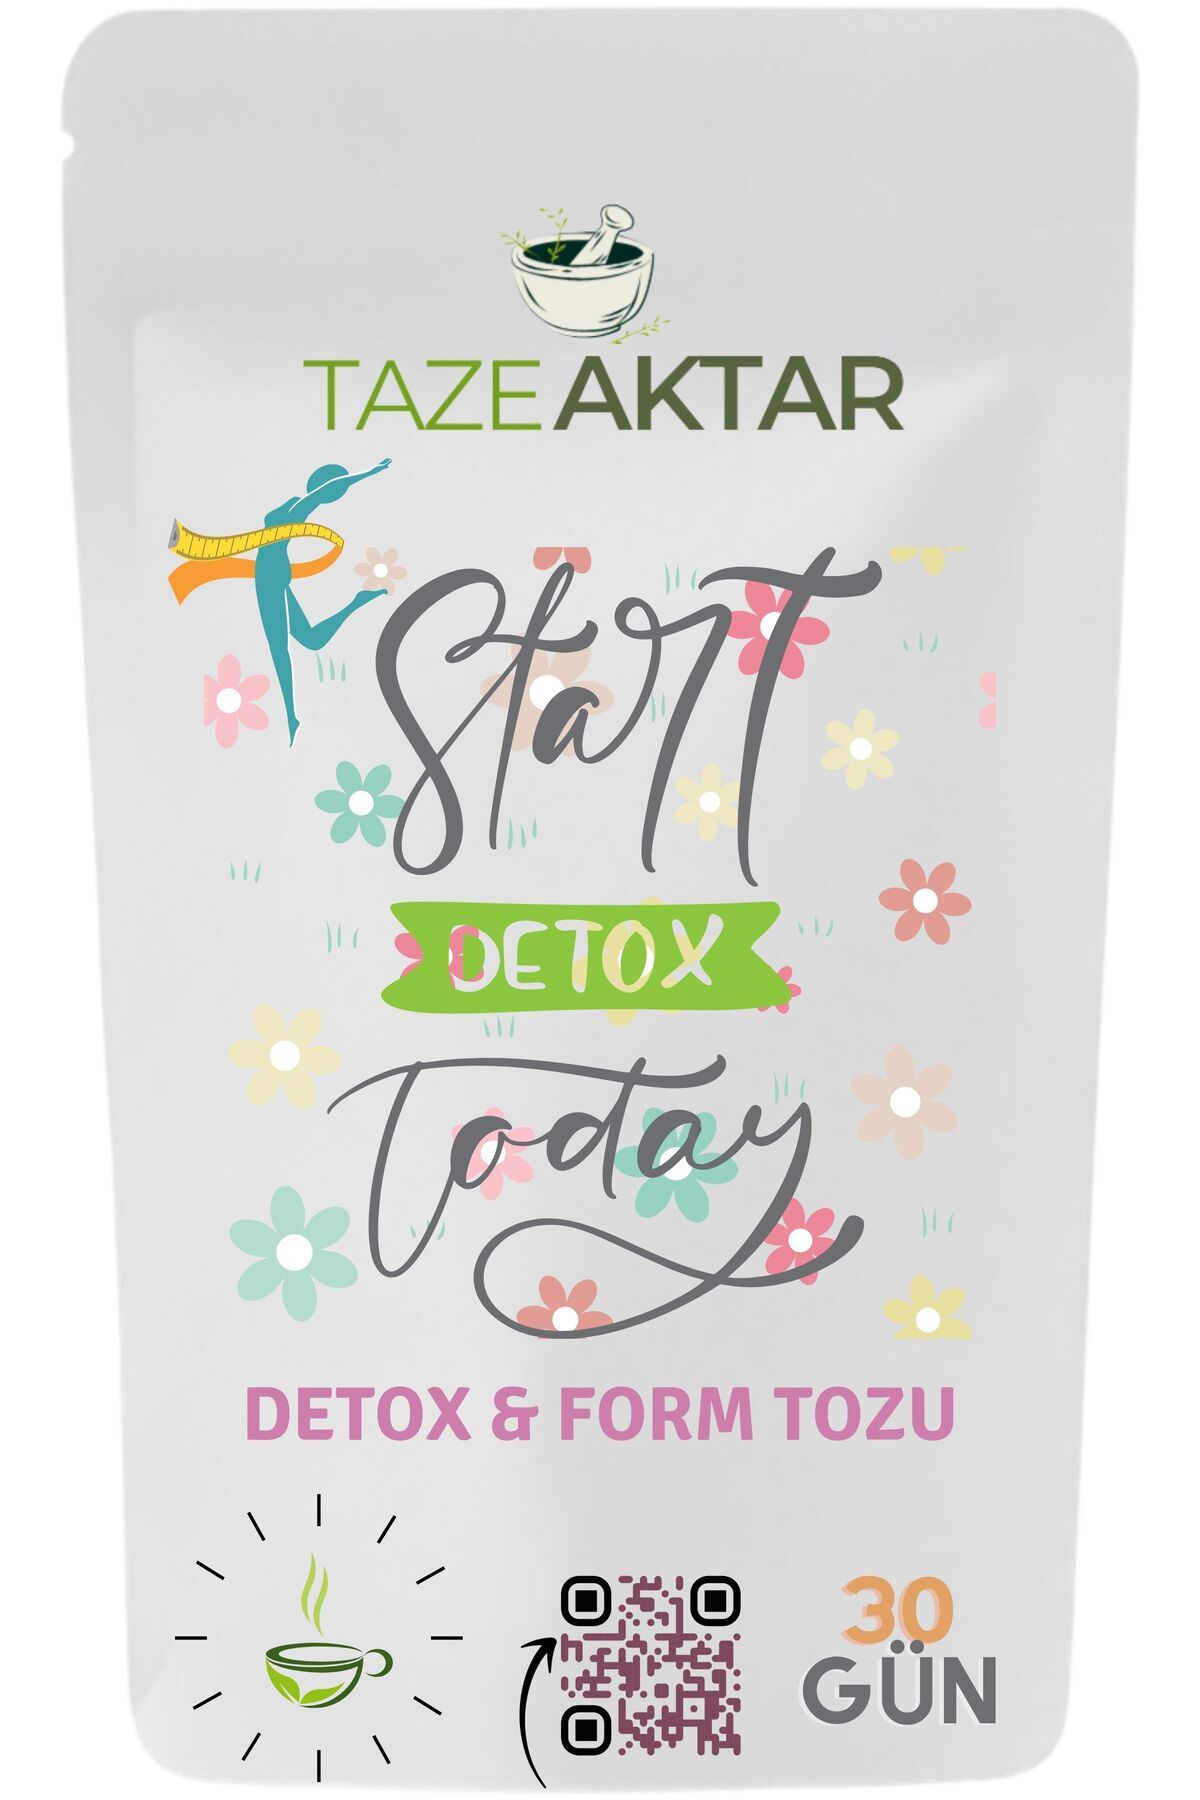 TazeAktar Doğal Detox,Form Tozu,30 Gün,Bitkisel Çay